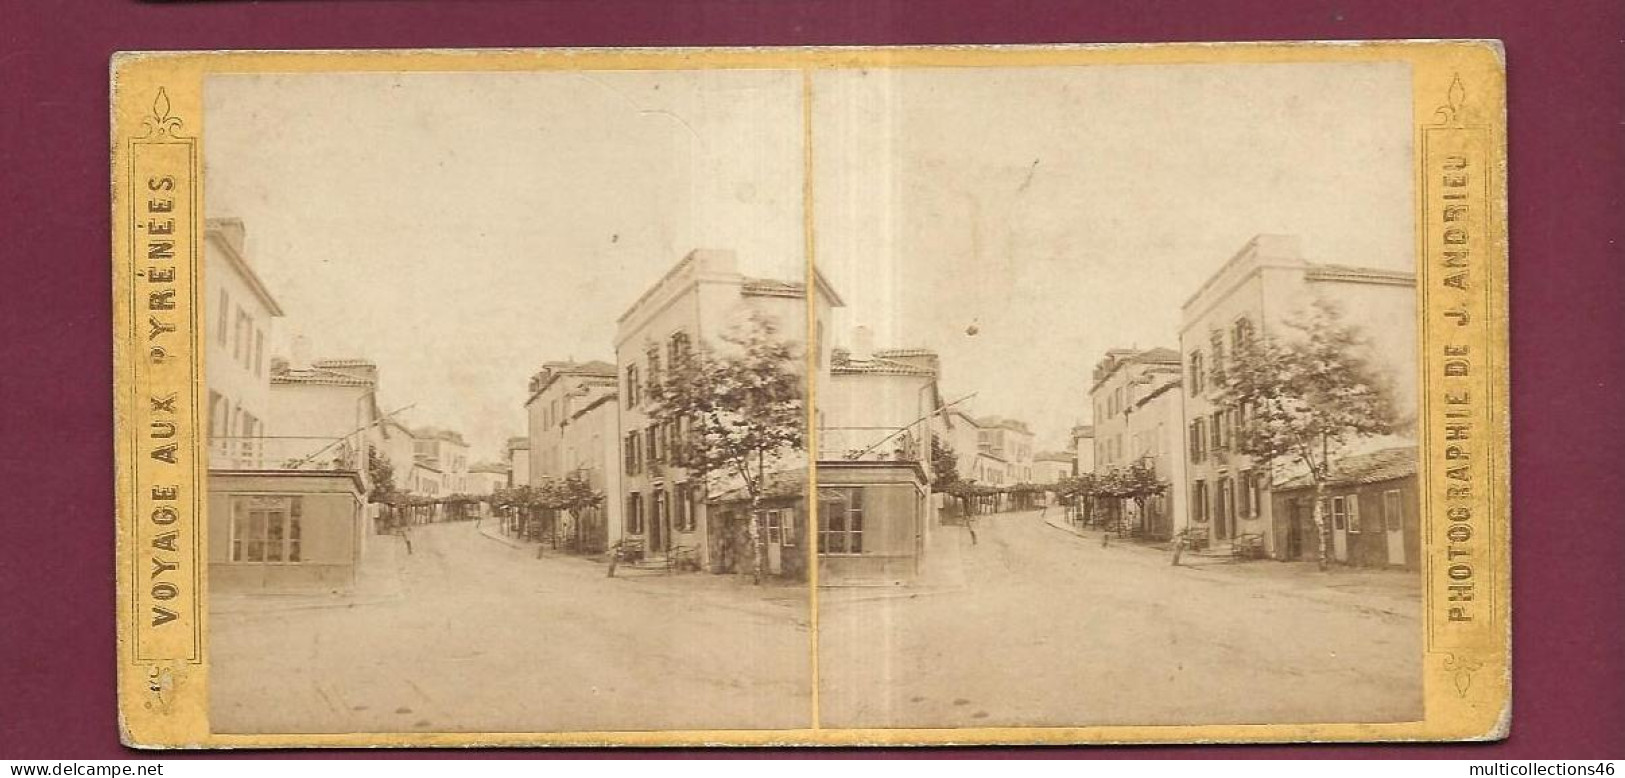 190424 - PHOTO STEREO PAPIER - VOYAGE AUX PYRENEES J ANDRIEU PARIS - BIARRITZ Rue Du Port Vieux - Stereo-Photographie